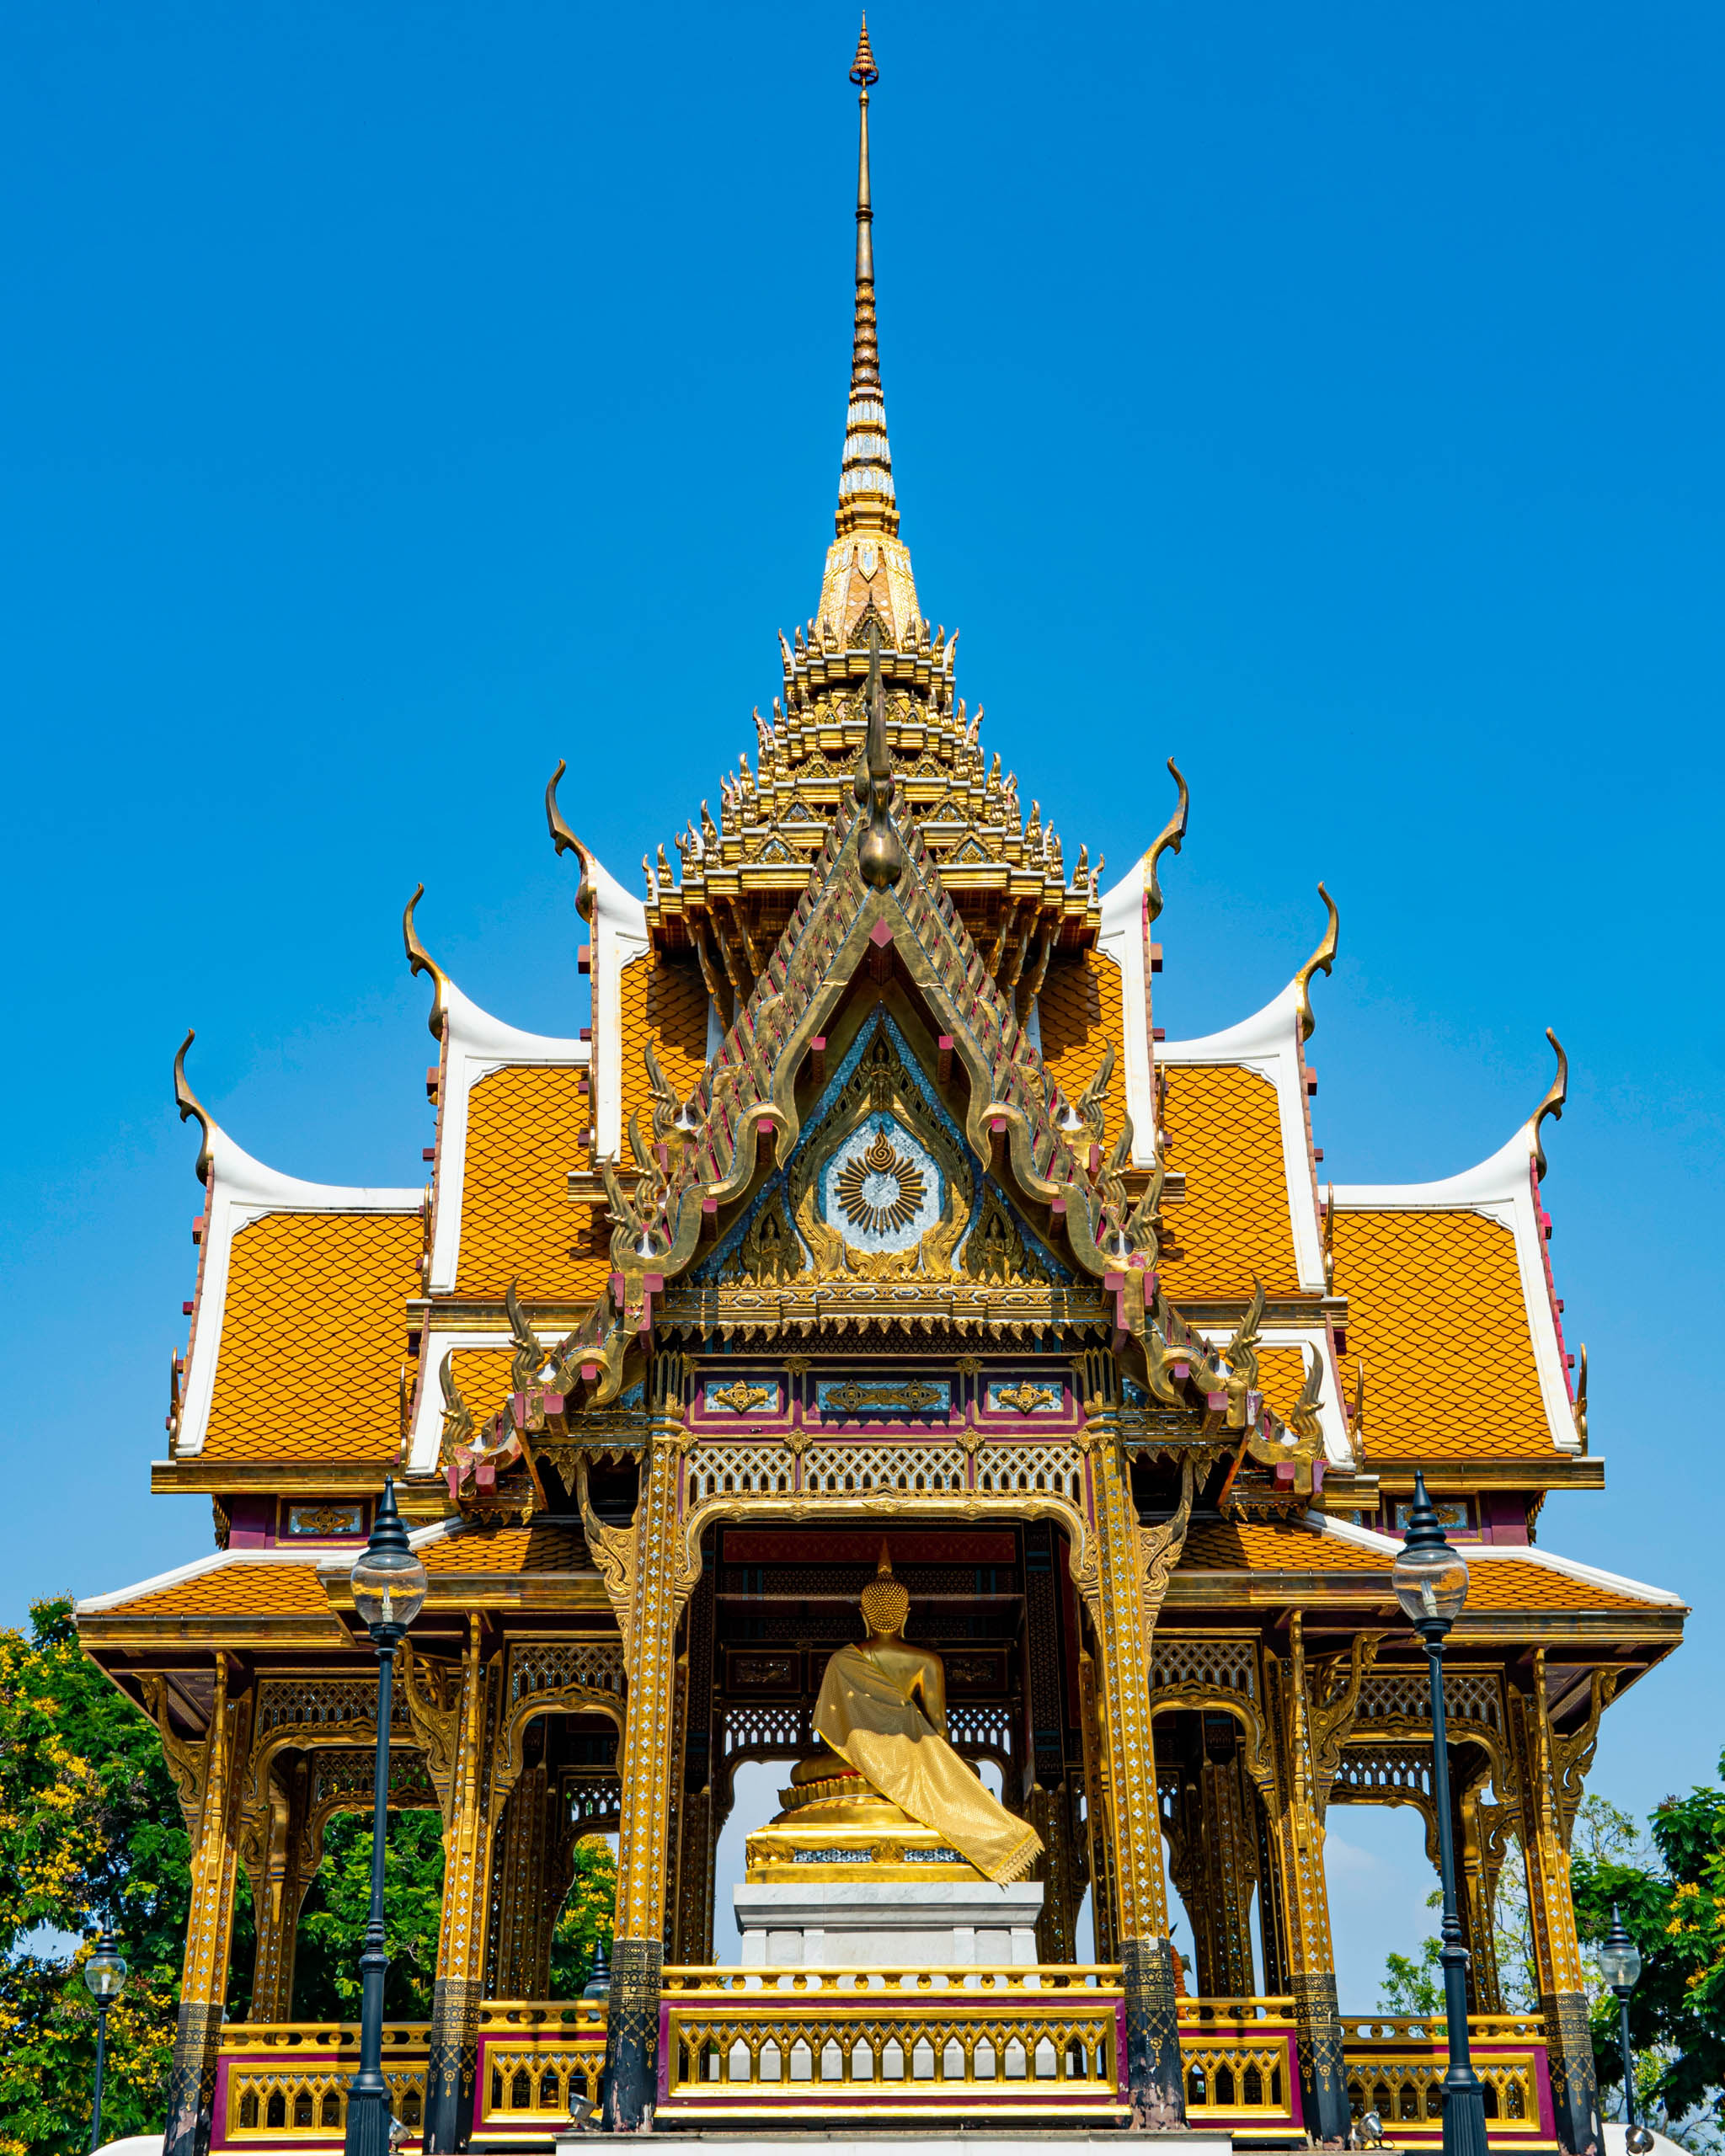 Du lịch Thái Lan dễ dàng hơn kể từ 01/07 khi không còn áp dụng Thailand Pass